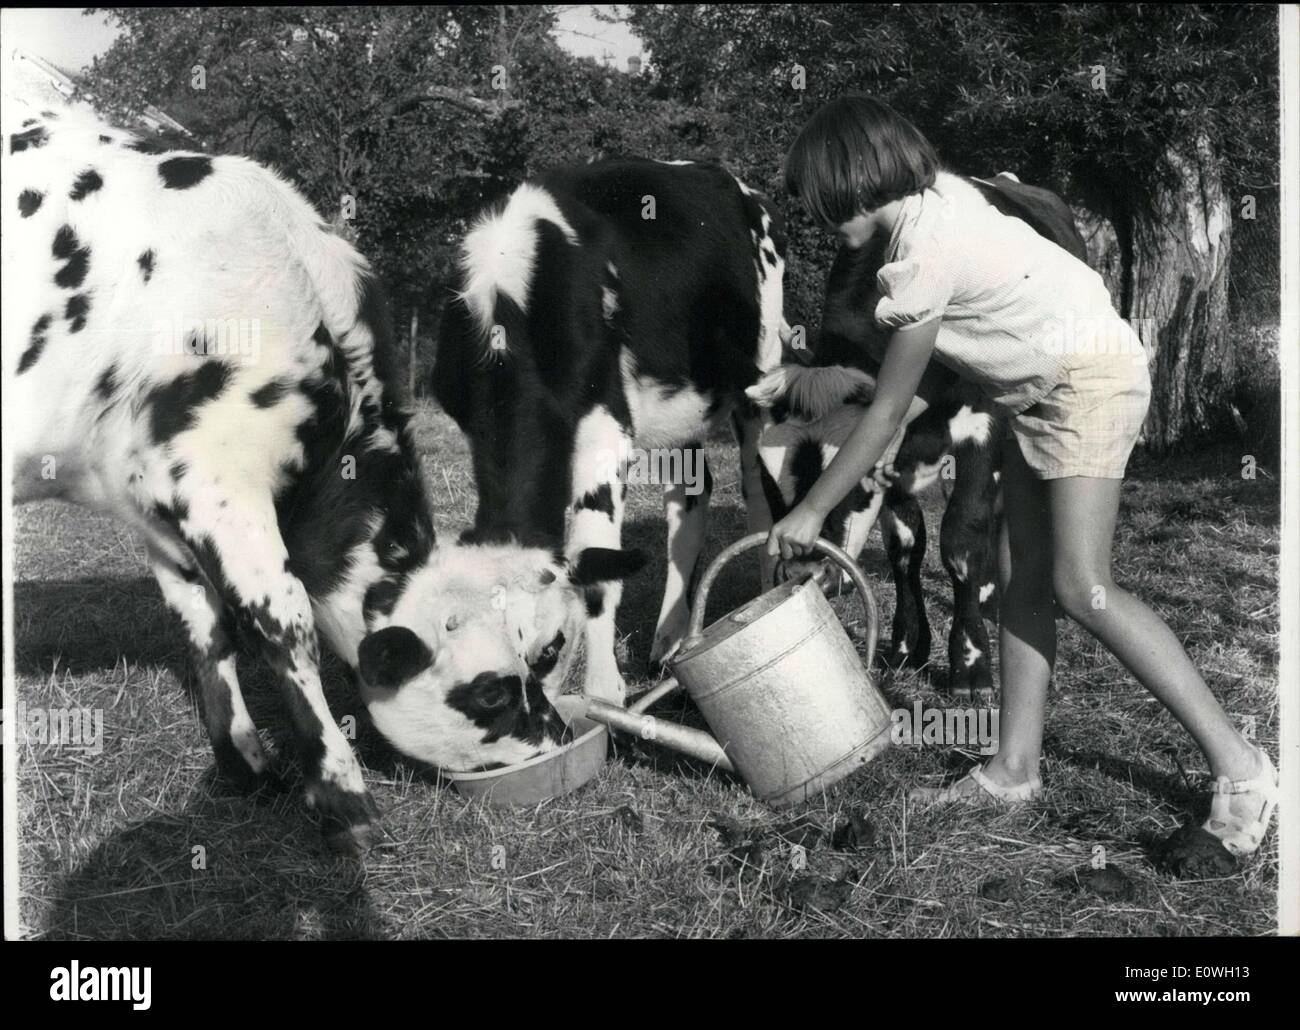 Sett. 30, 1962 - ragazza porta acqua per vacche durante la siccità, Ile de France Foto Stock